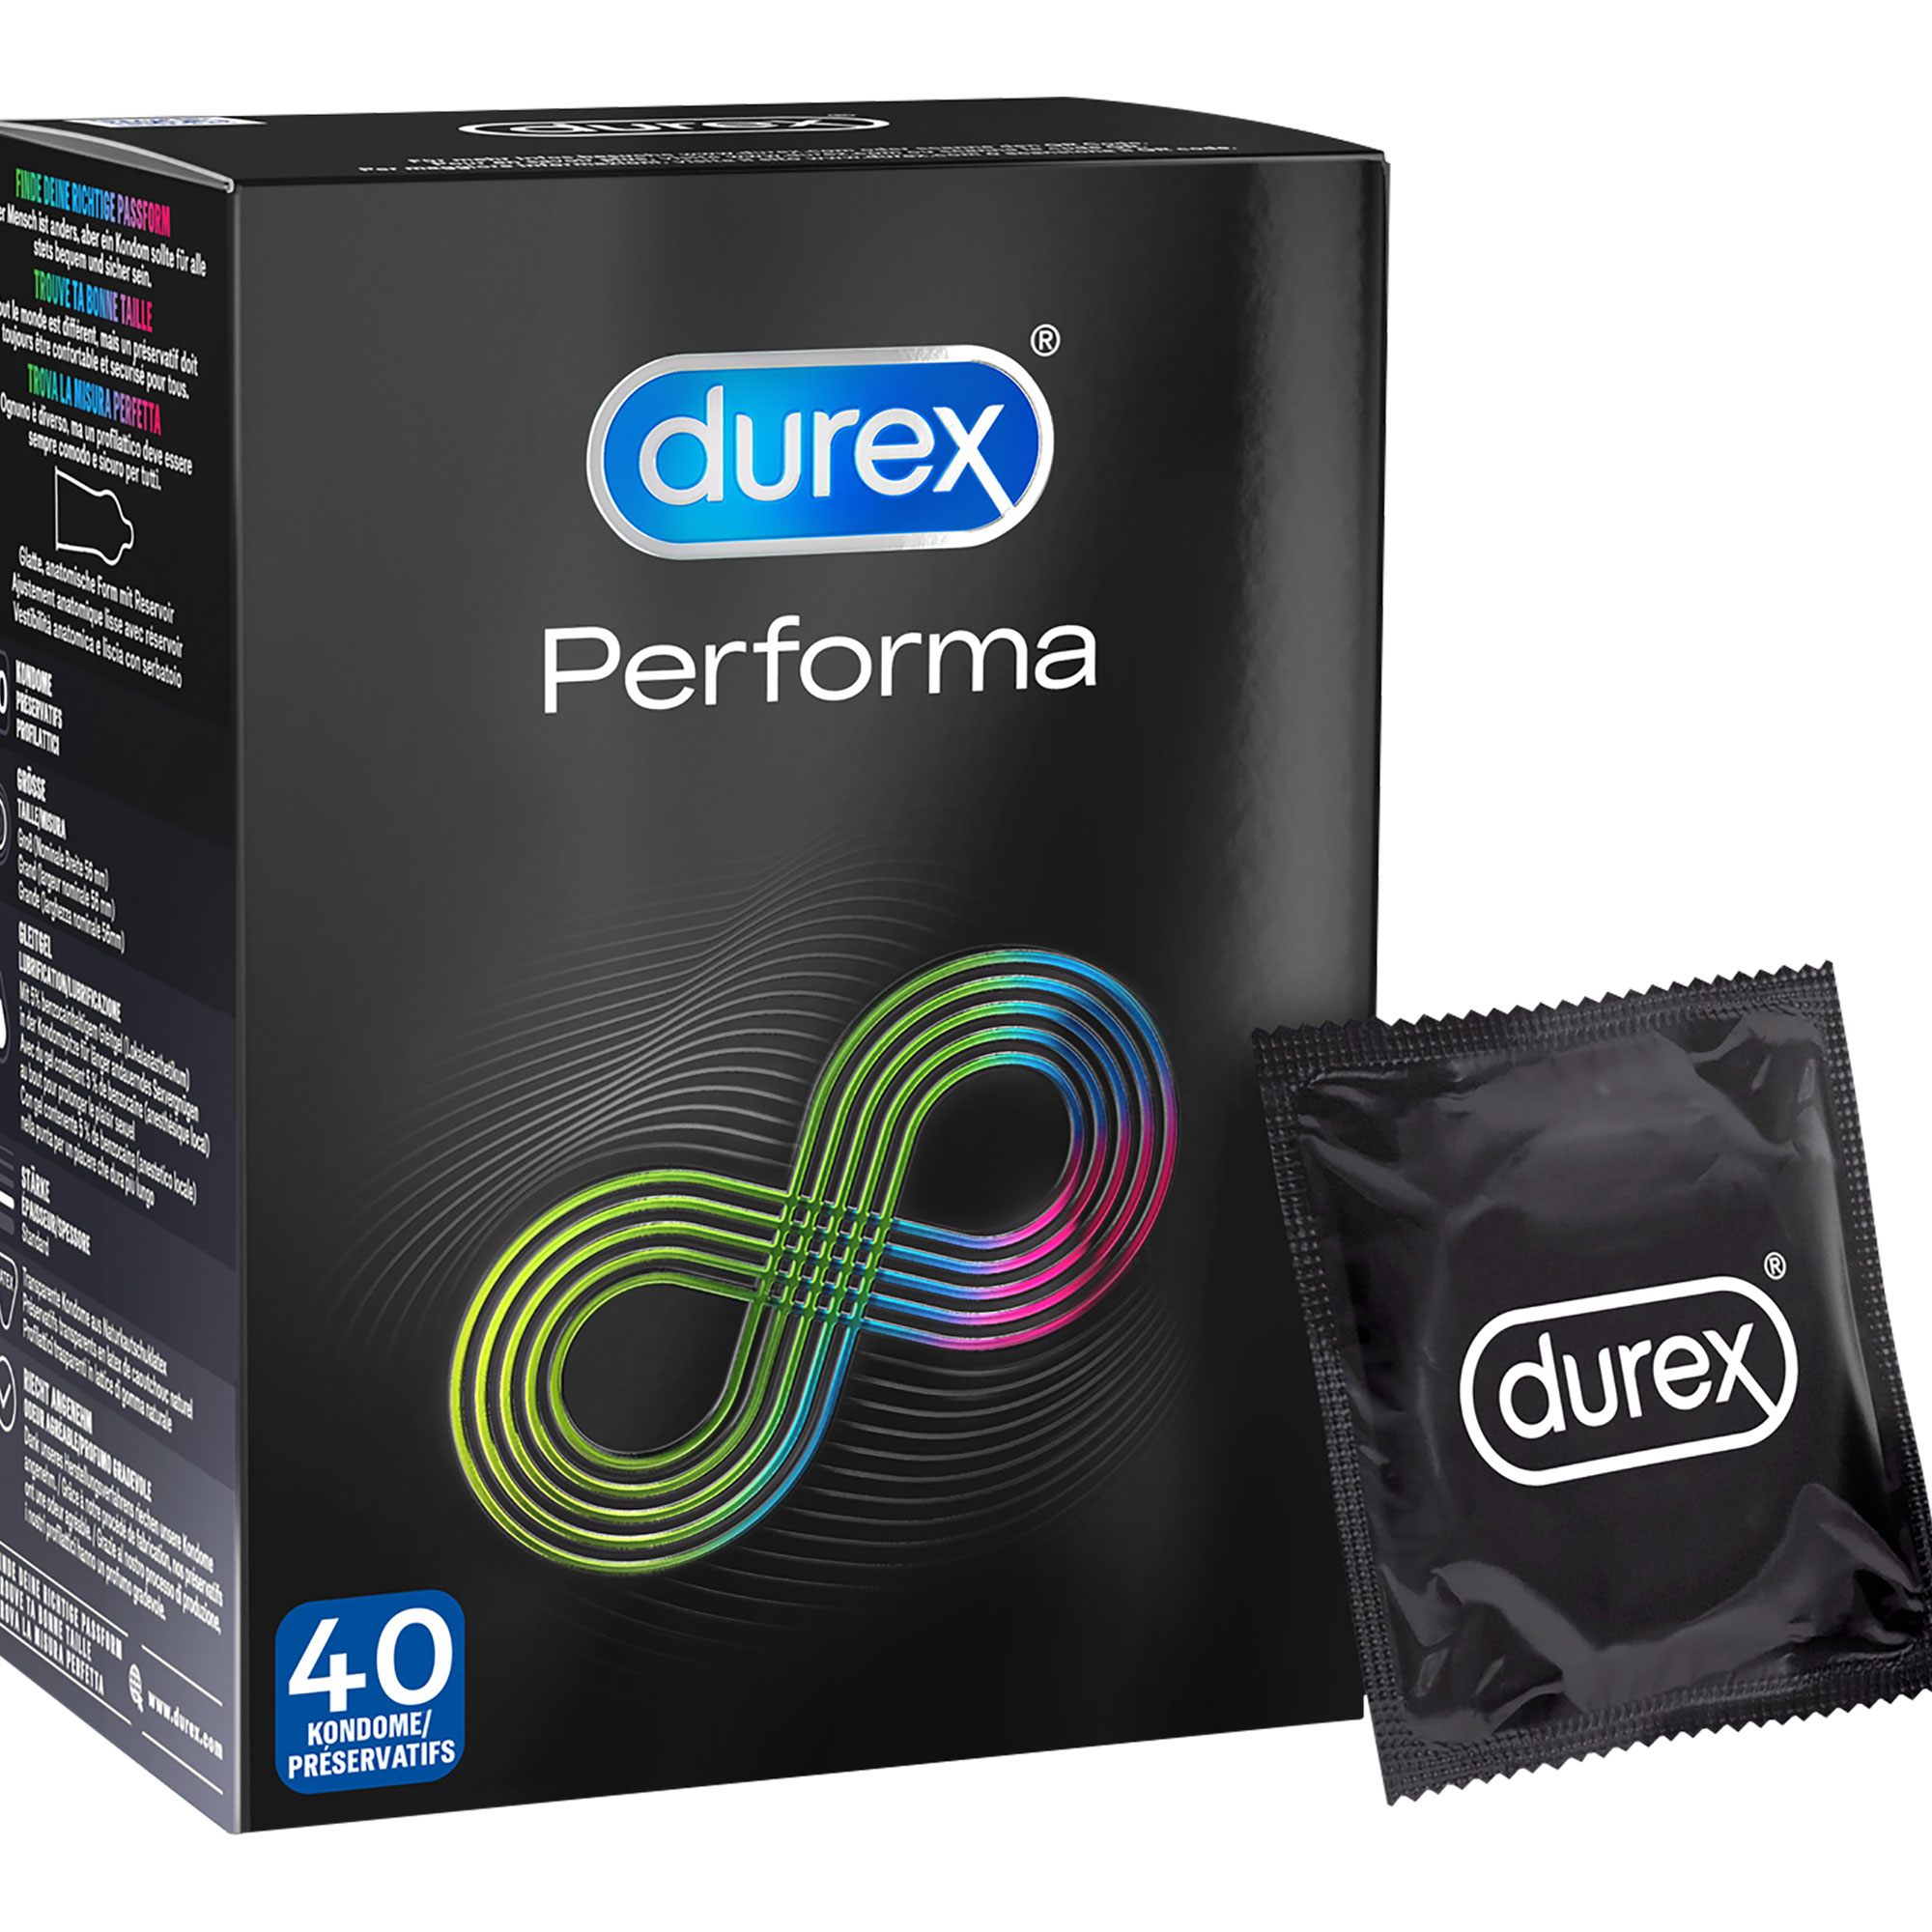 Kondome mit 5% benzocainhaltigem Gel in der Kondomspitze. Für ein länger andauerndes Sexvergnügen.